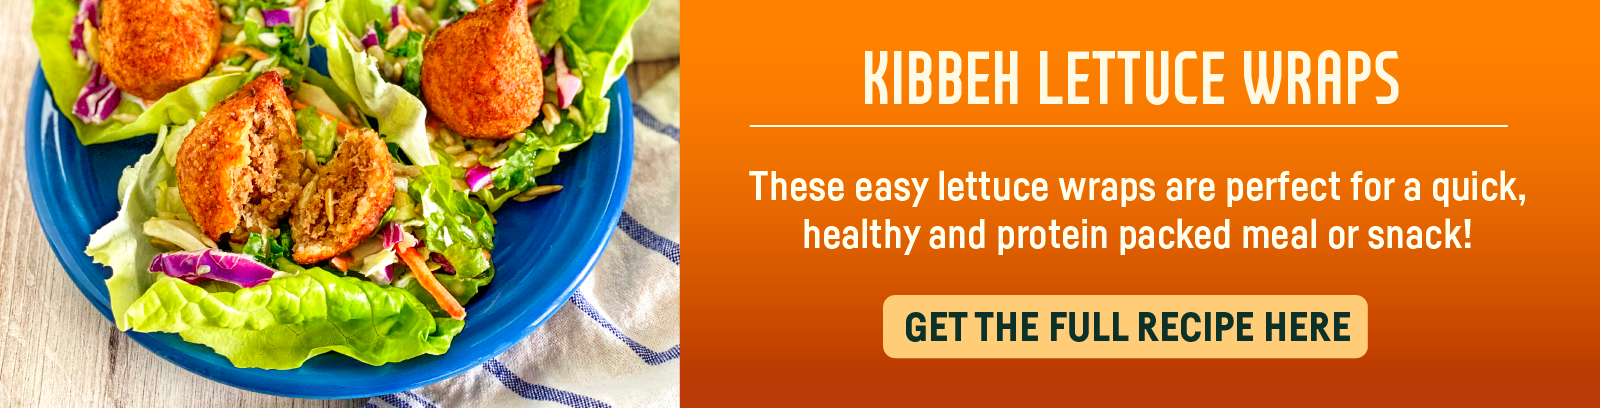 Kibbeh Lettuce wraps